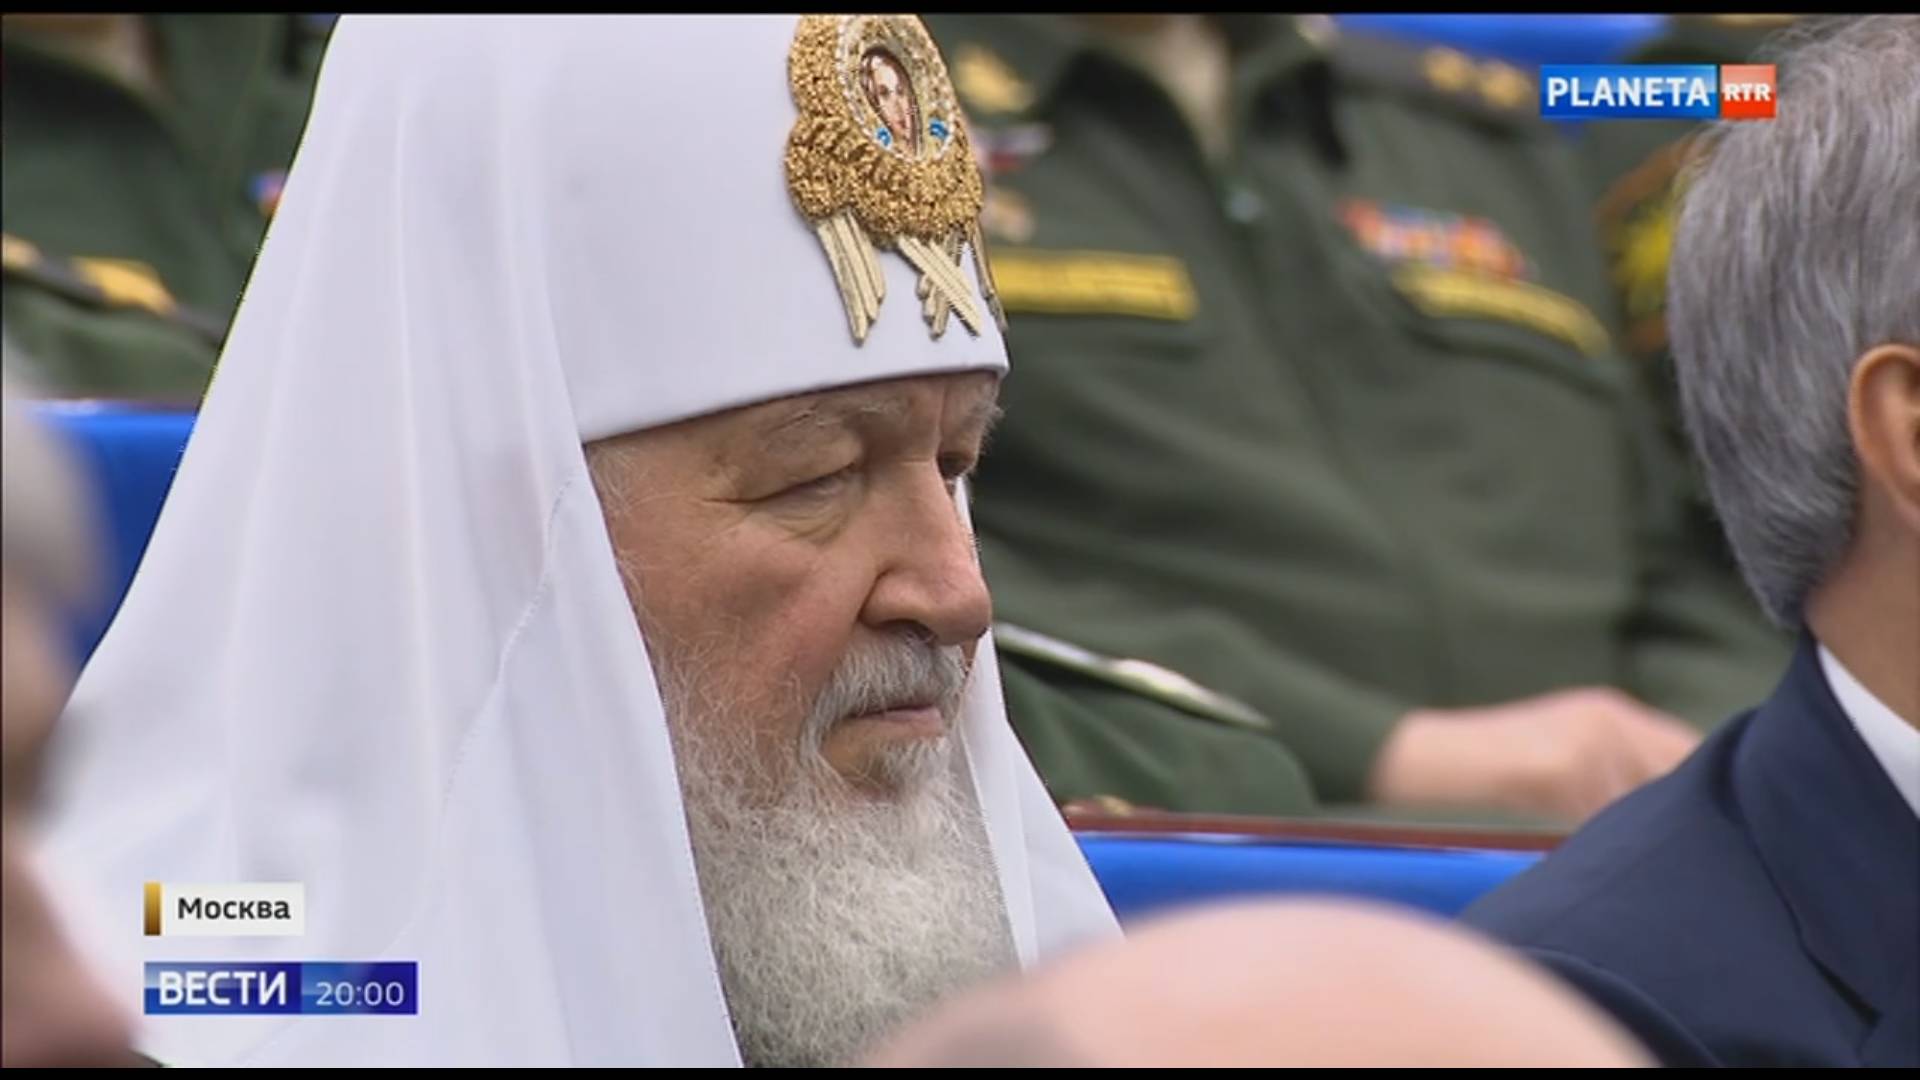 Prawoslawny duchowny w białym nakryciu głowy siedzie obok wojskowych